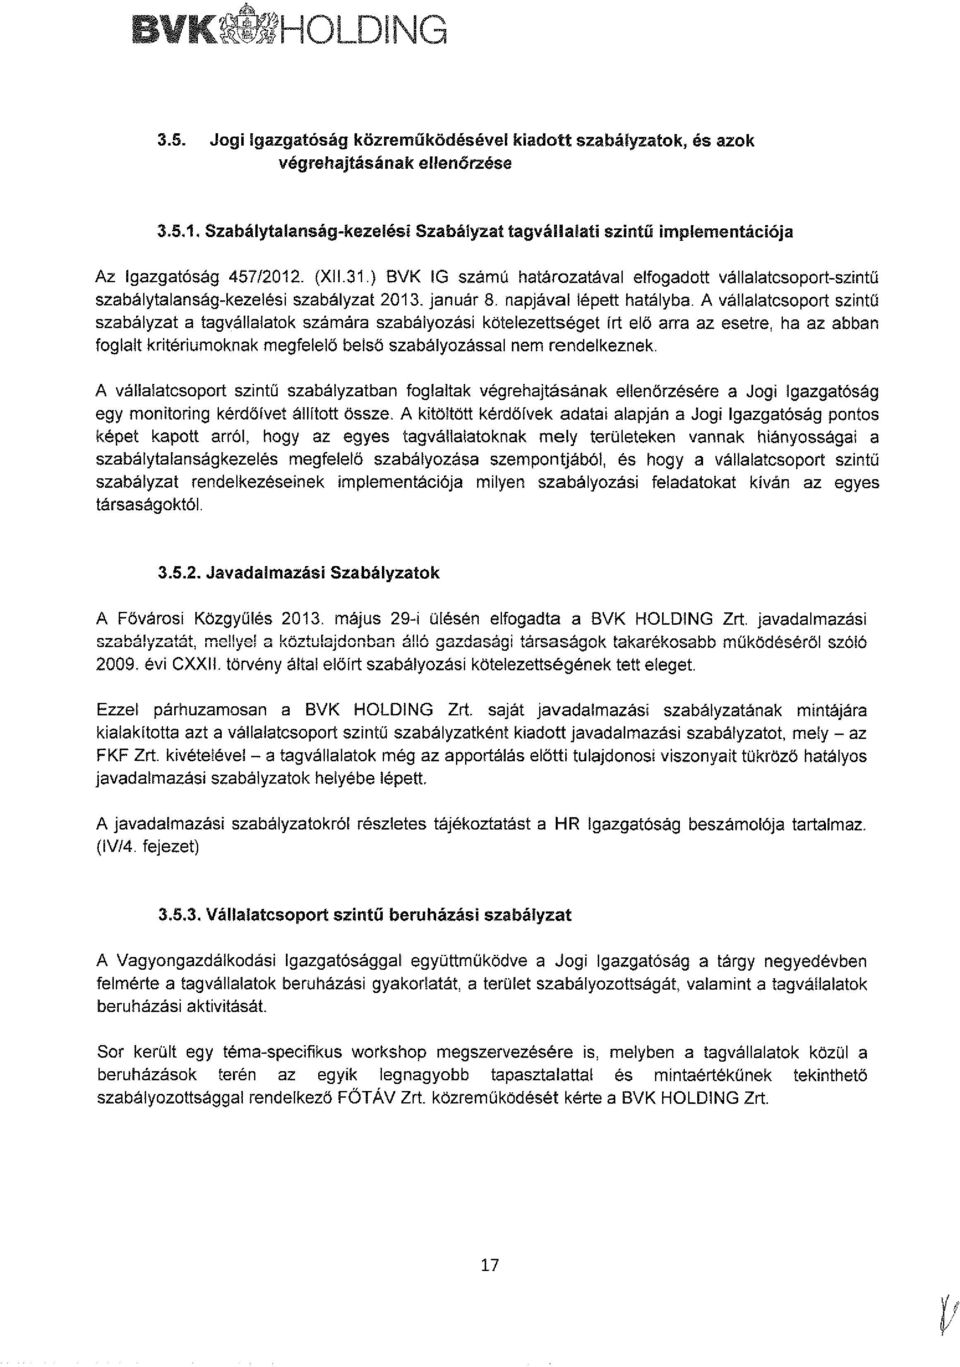 ) BVK IG számú határozatával elfogadott vállalatcsoport-szintű szabálytalanság-kezelési szabályzat 2013. január 8. napjával lépett hatályba.